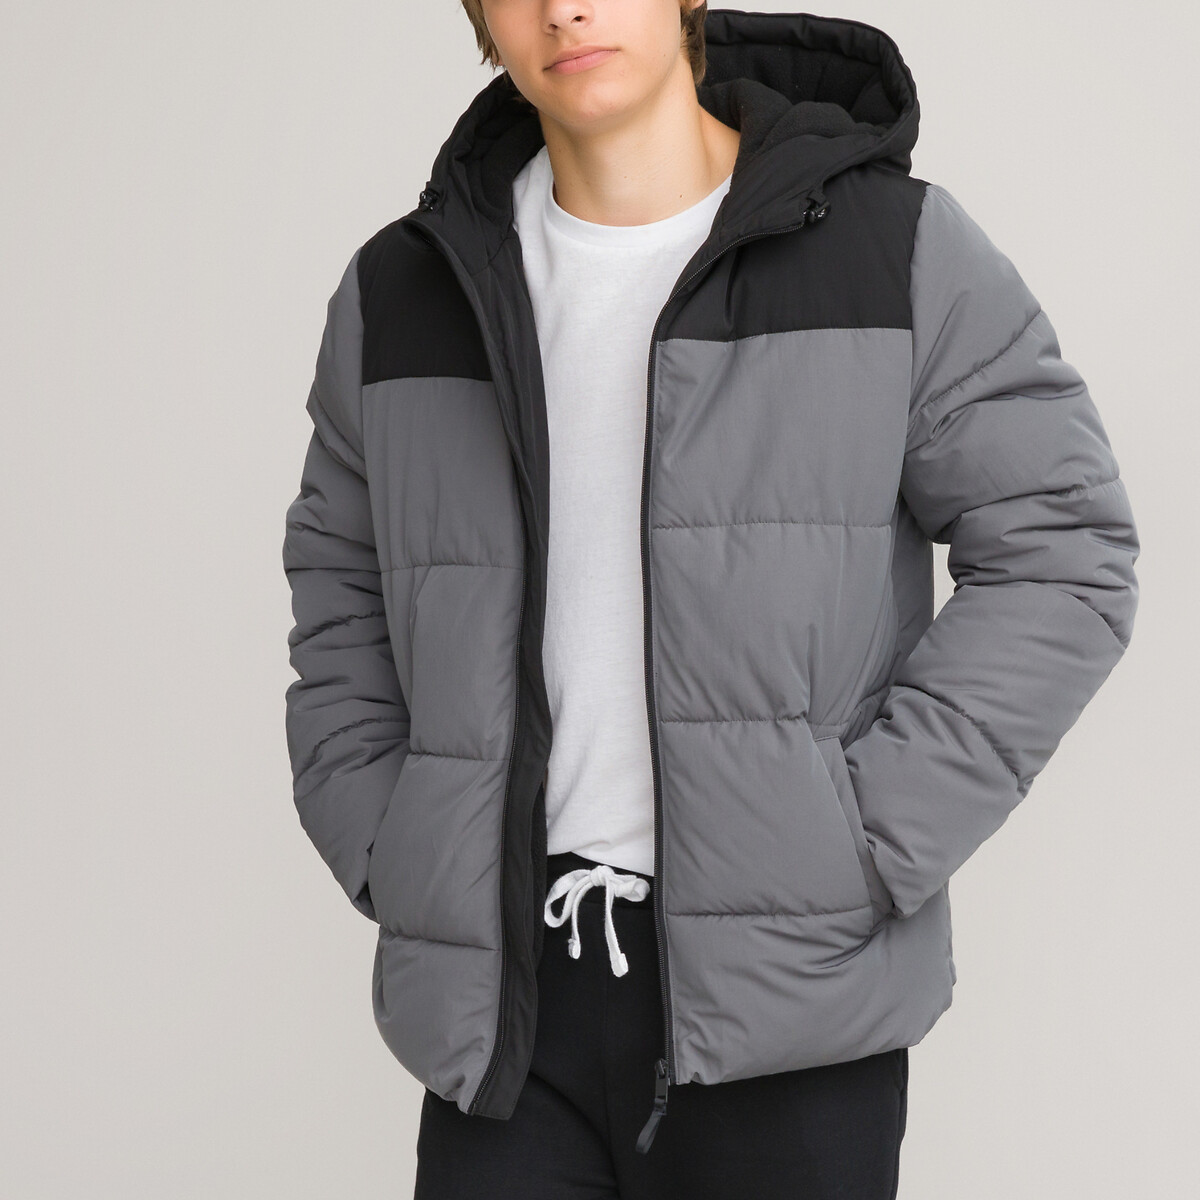 Куртка стеганая утепленная с капюшоном XXXS серый куртка стеганая утепленная с капюшоном 18 лет 180 см серый